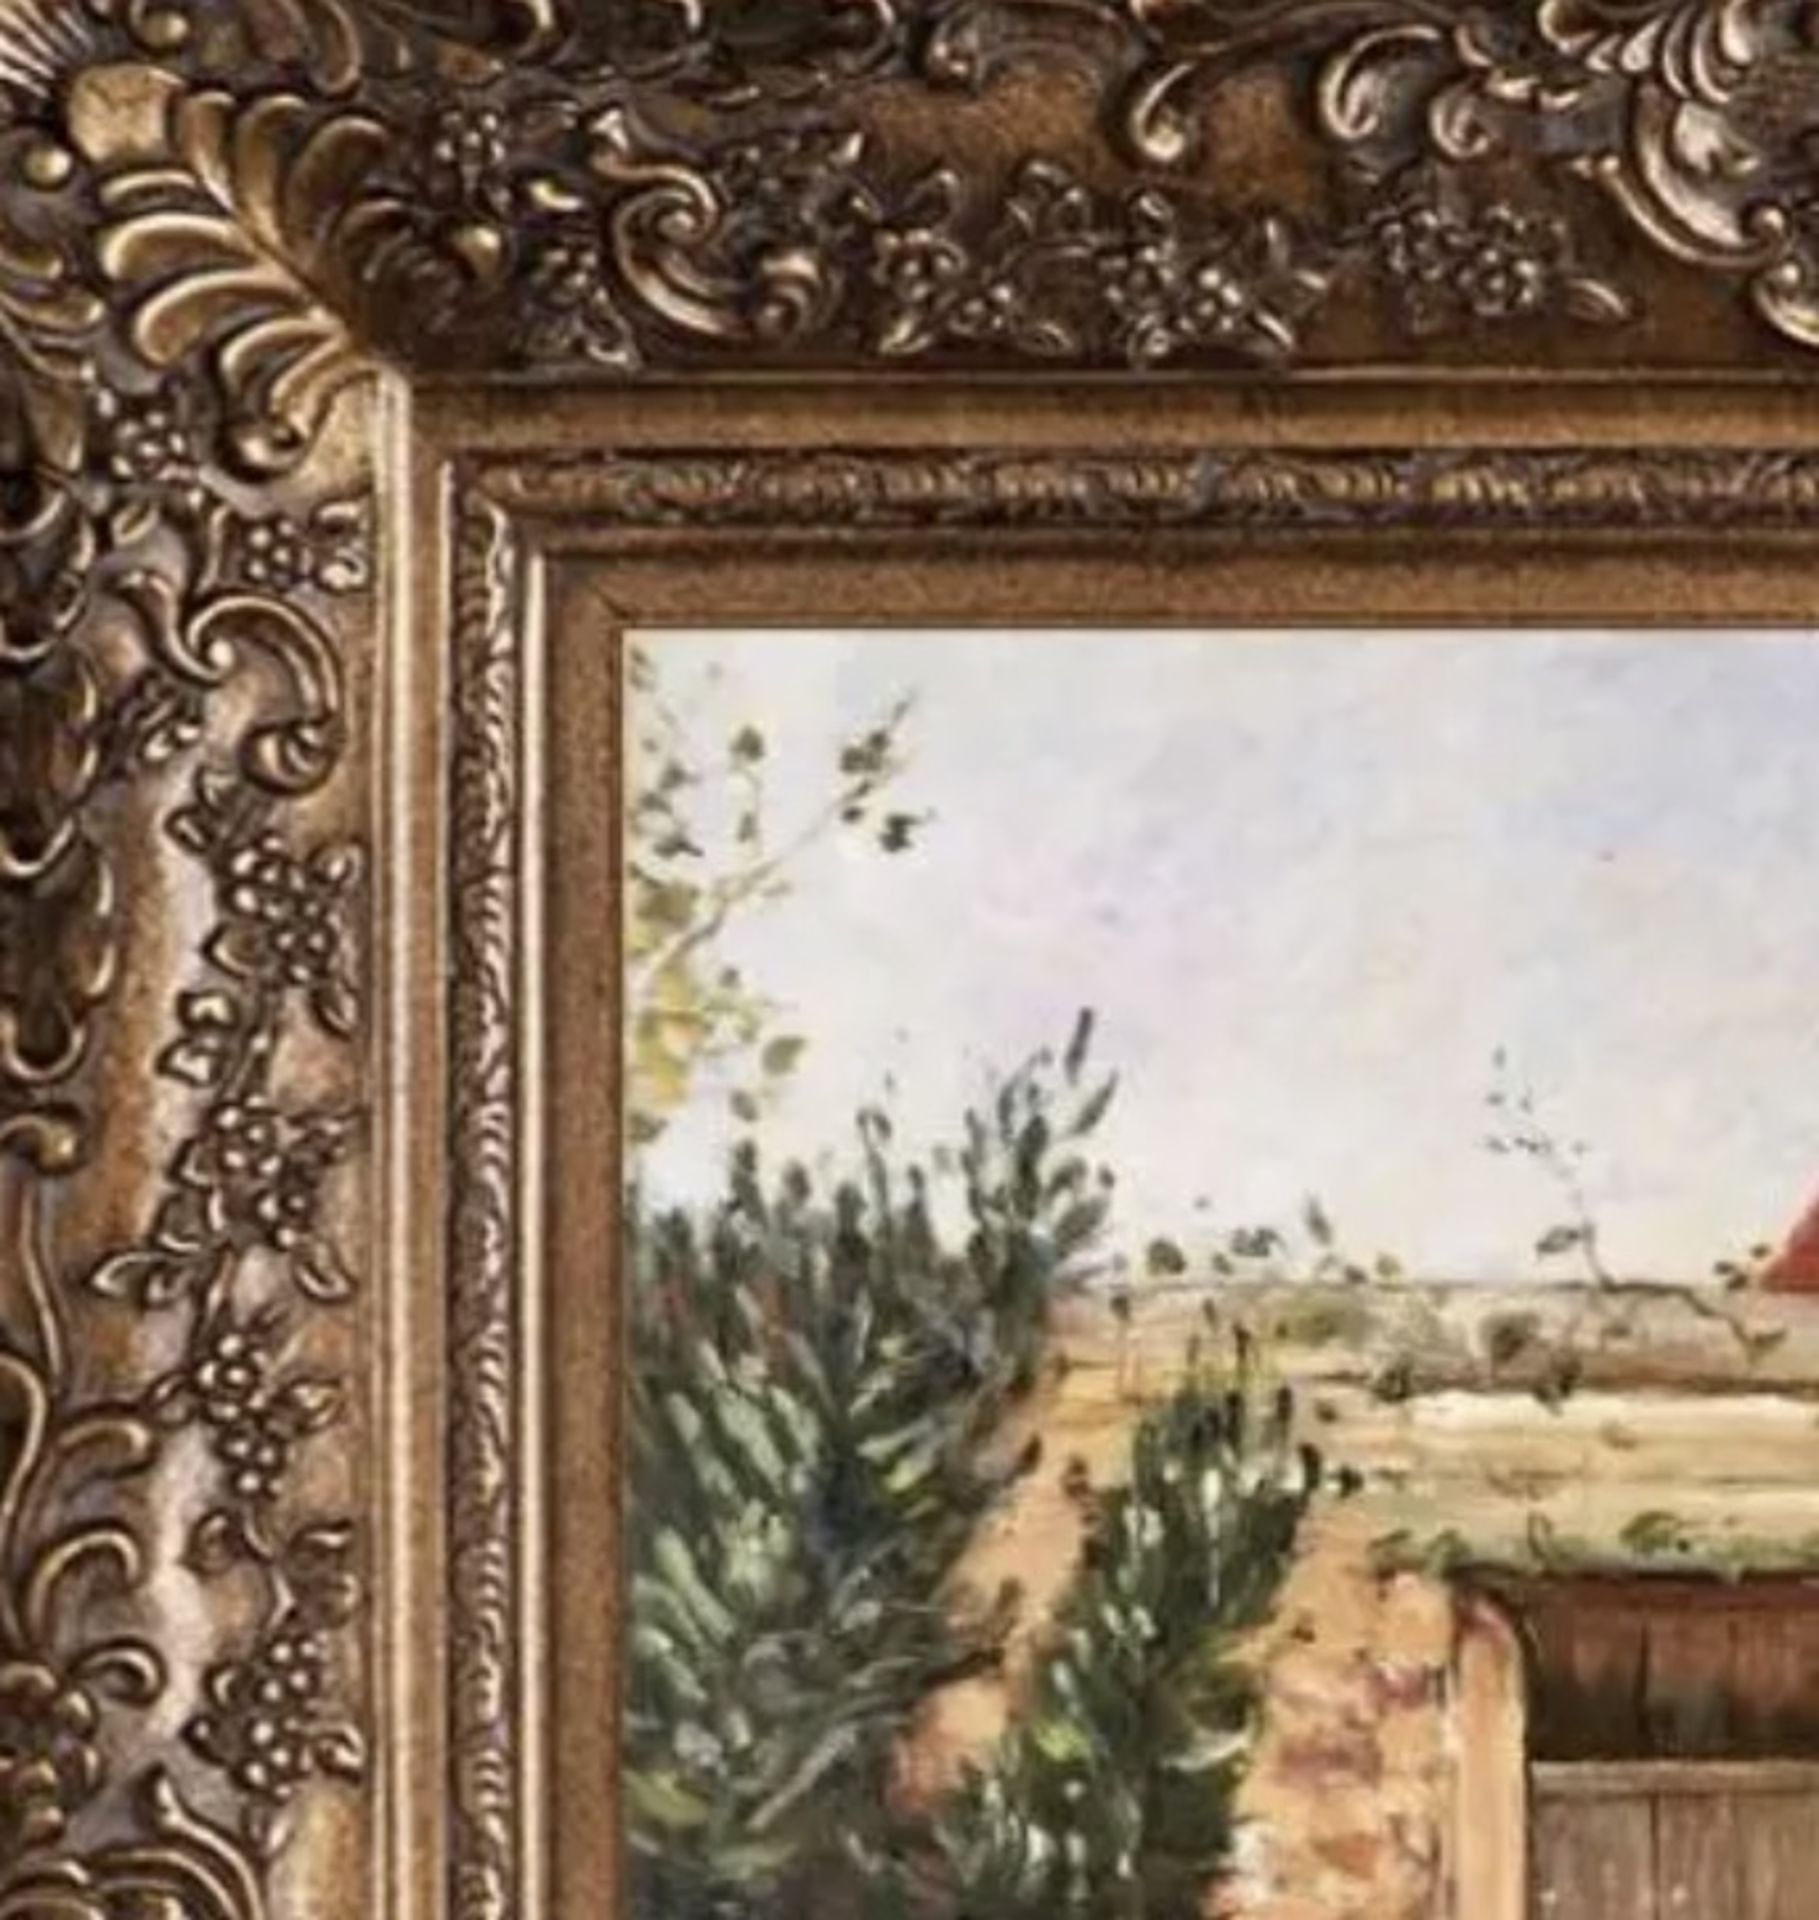 Childe Hassam "The Garden Door, 1888" Oil Painting, After - Image 2 of 5